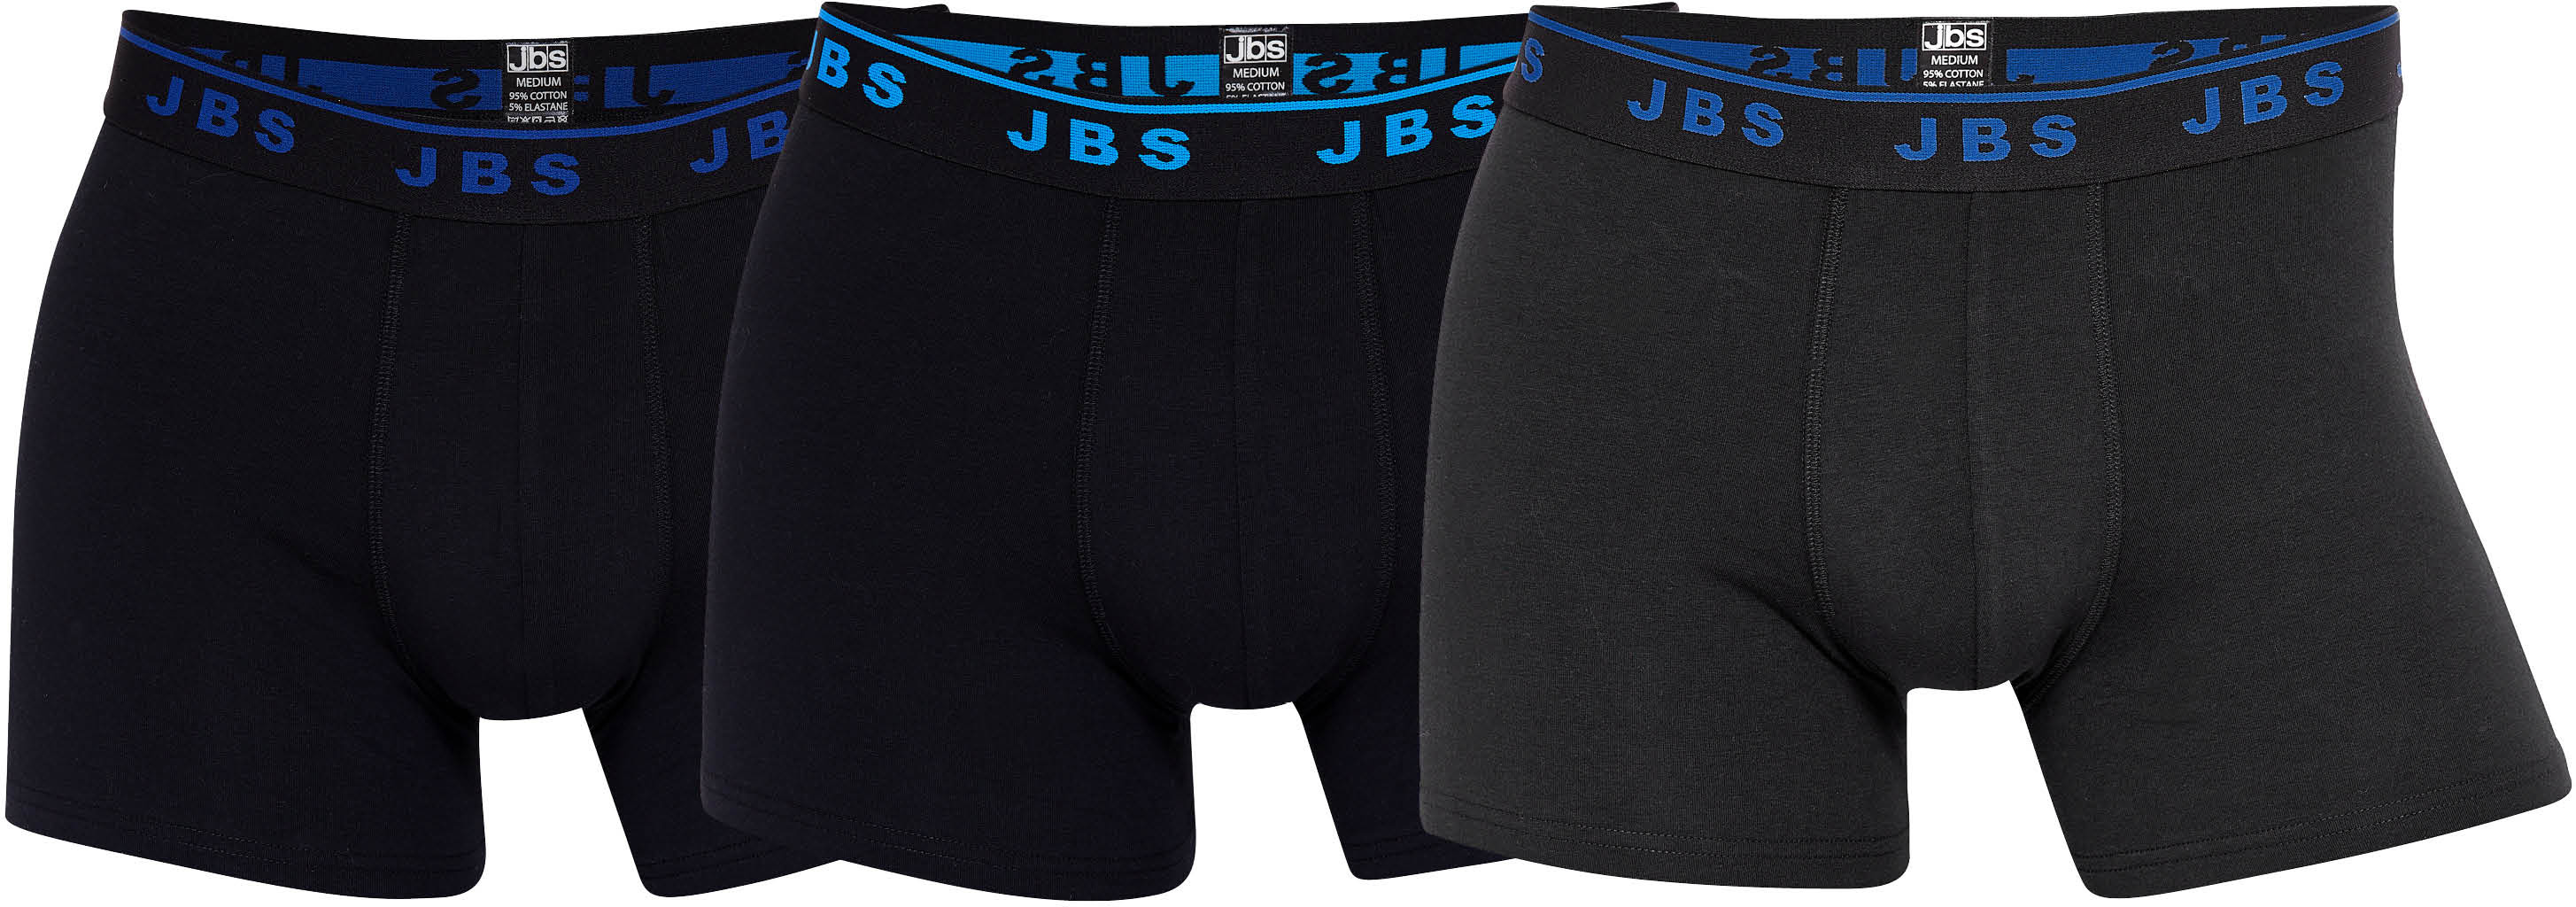 JBS - Tights 3-Pack